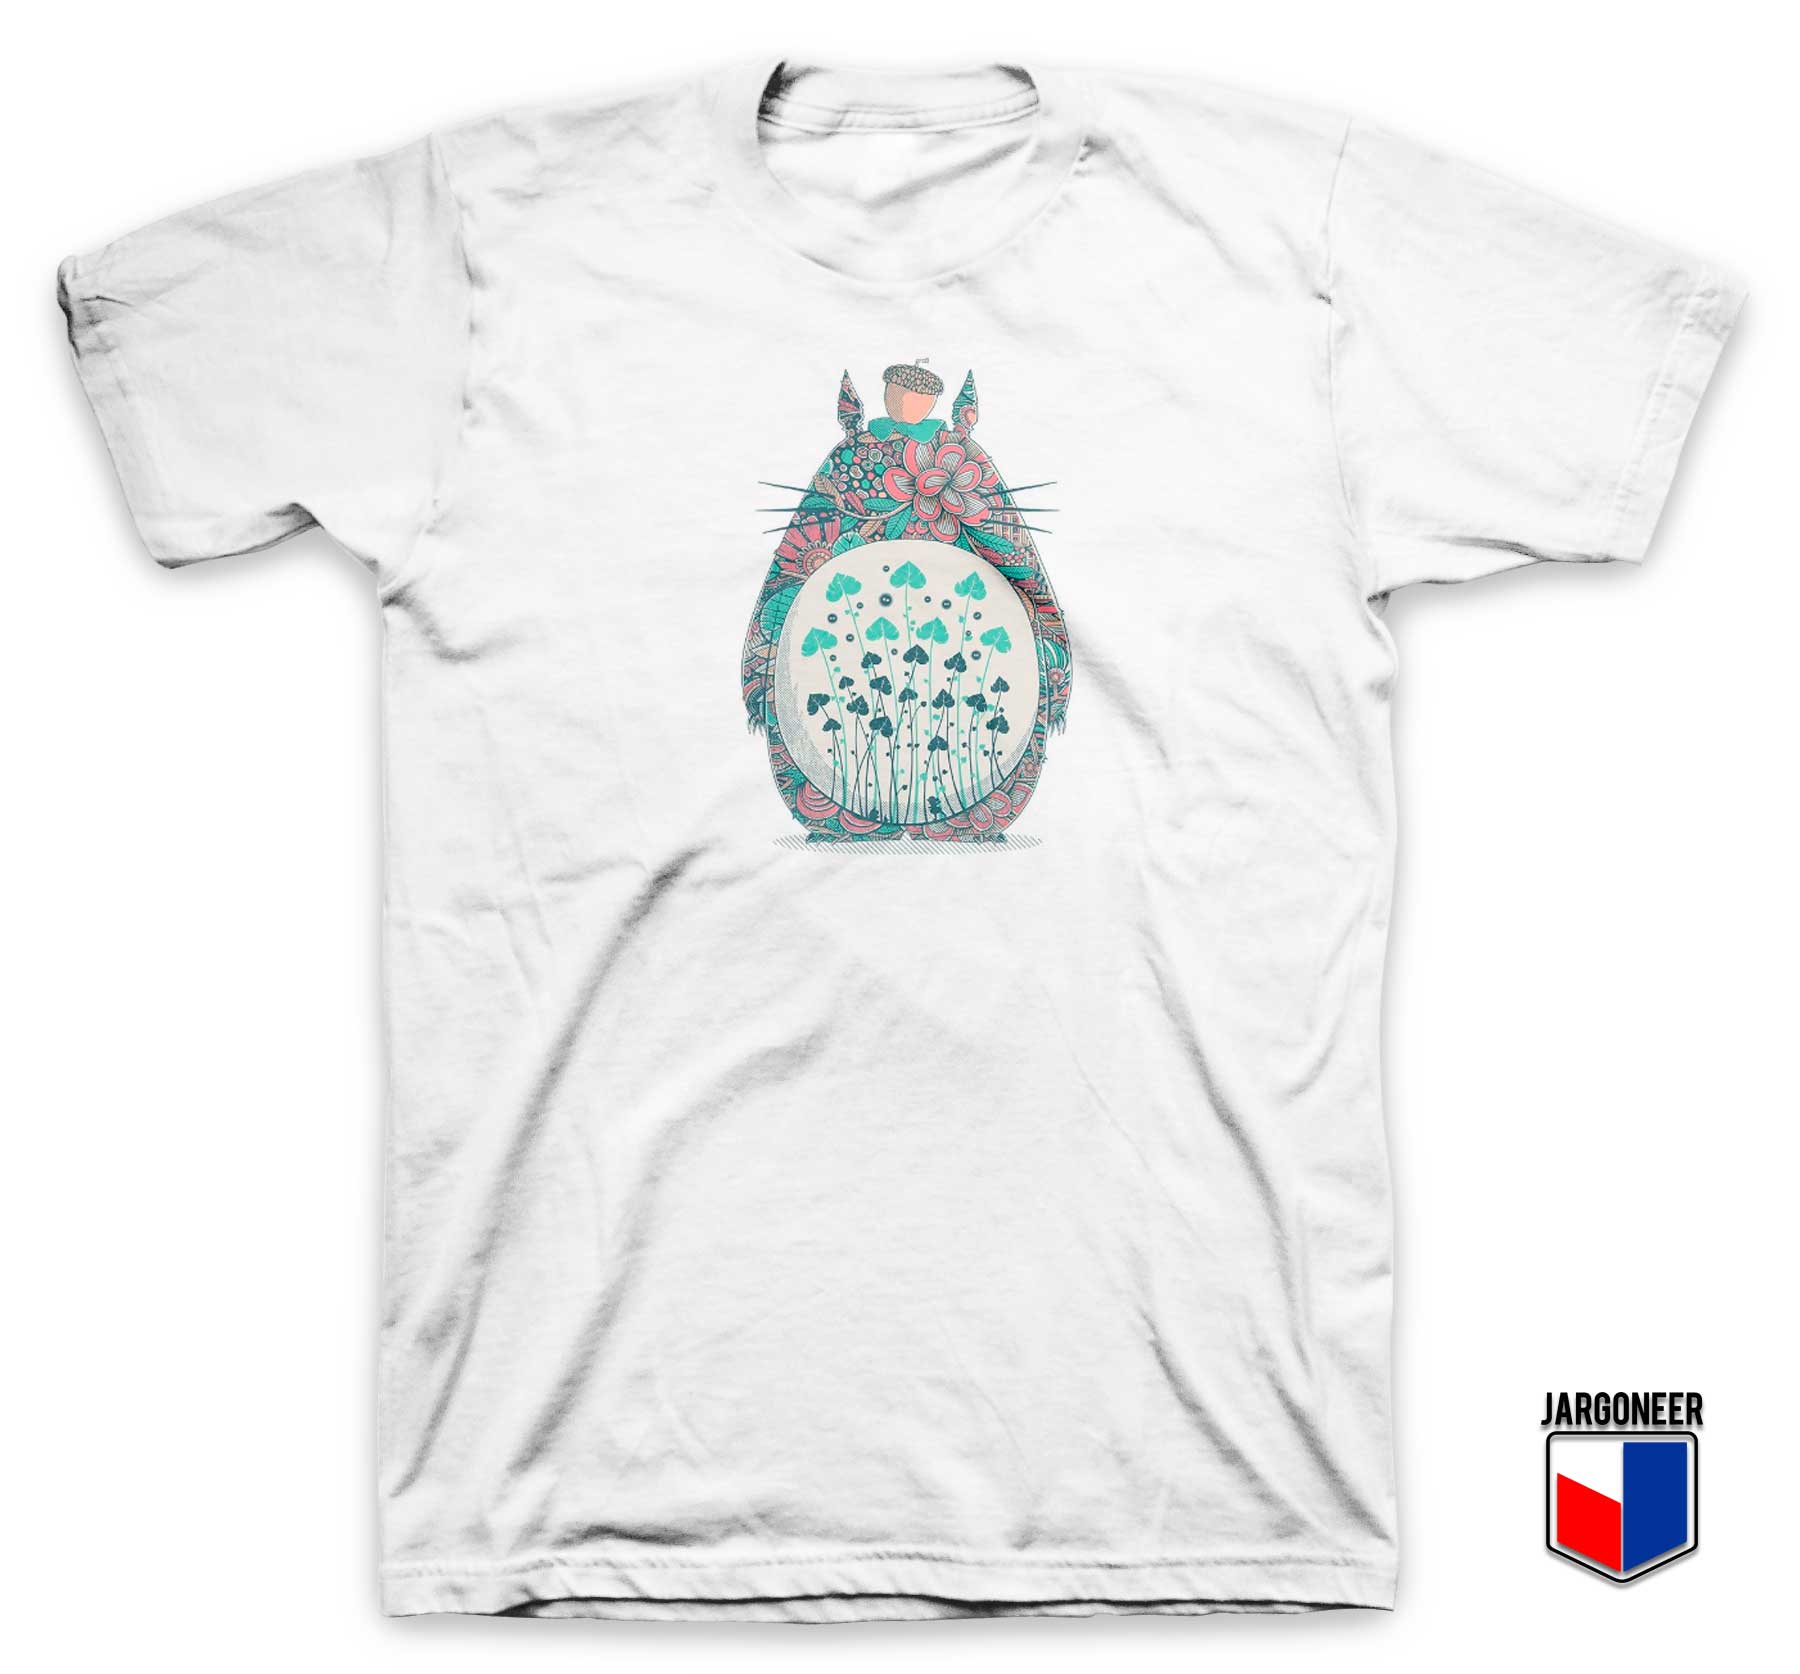 Totoro Unexpected Encounter T Shirt - Shop Unique Graphic Cool Shirt Designs